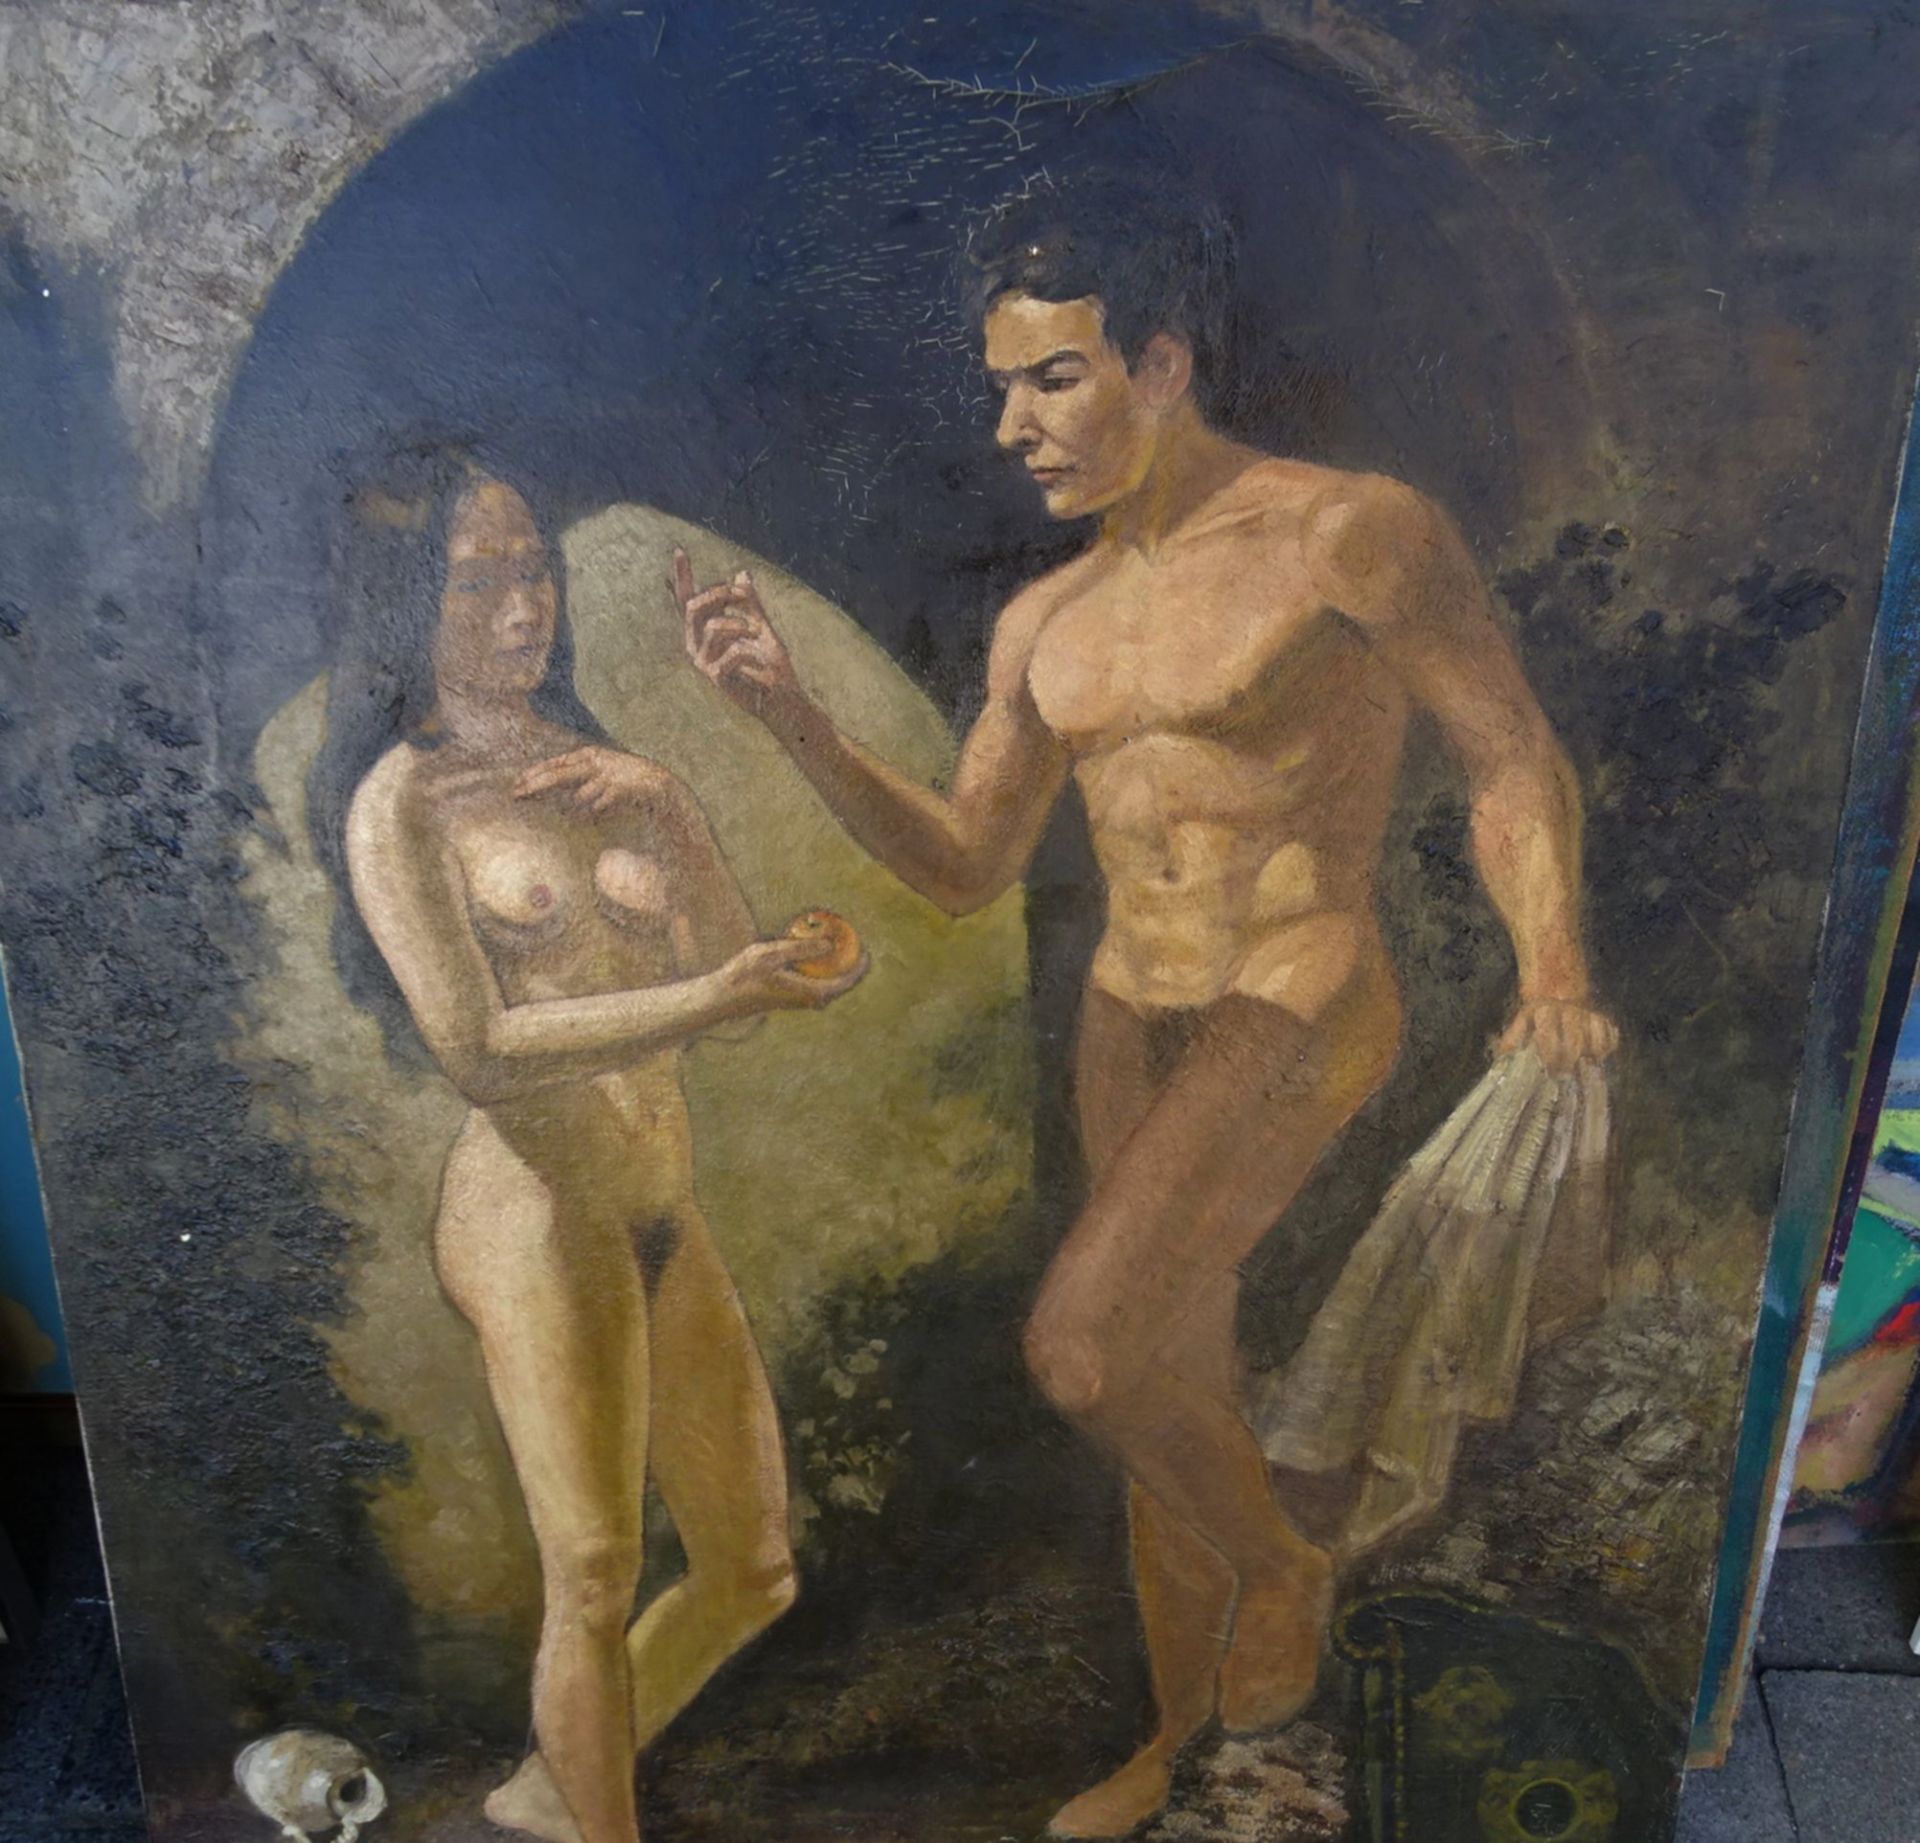 unleserlich signiert "Junges Paar", Öl/Leinen, 91x70 cm - Image 2 of 2